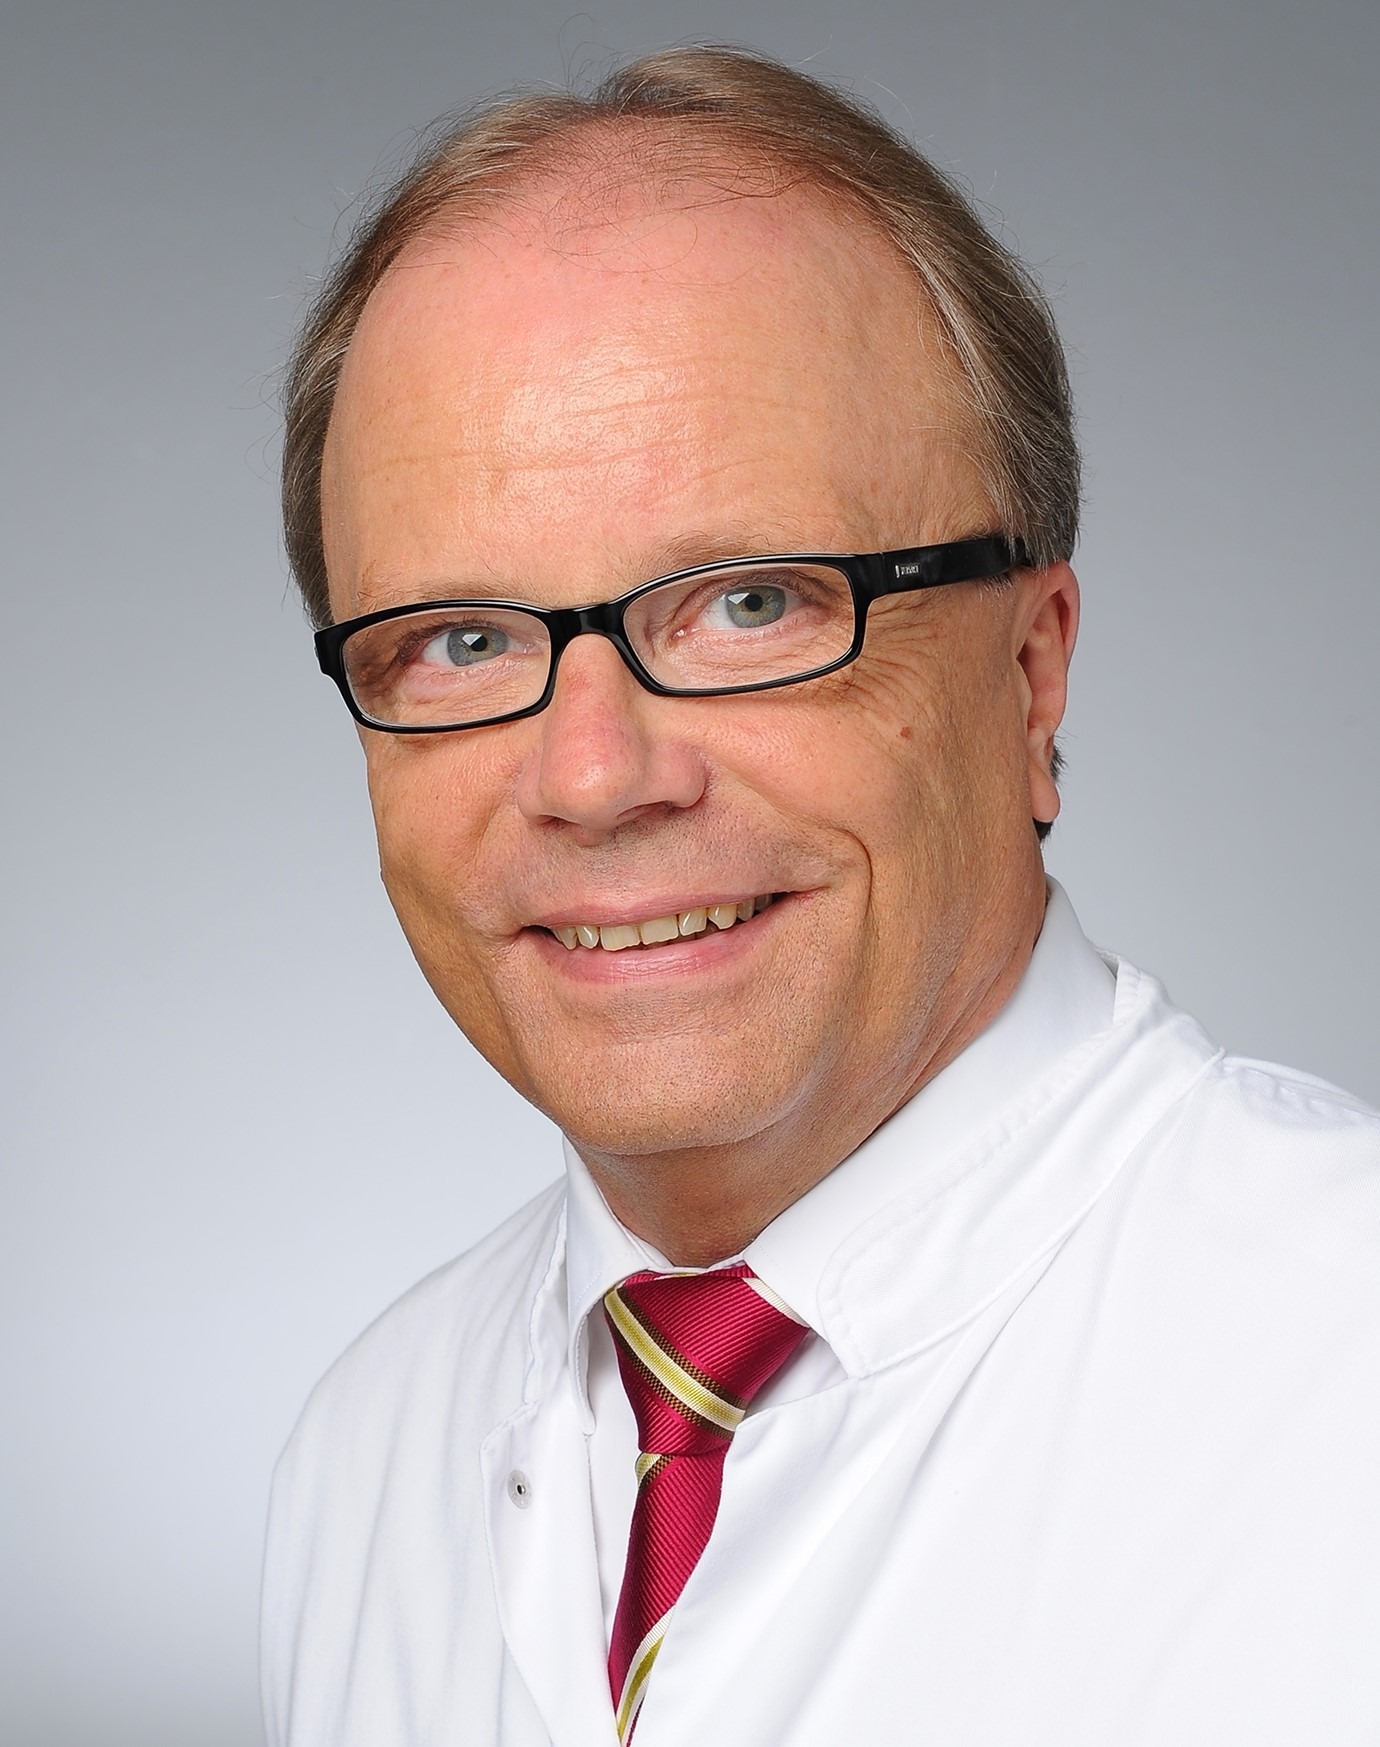 Prof. Dr. Böttiger